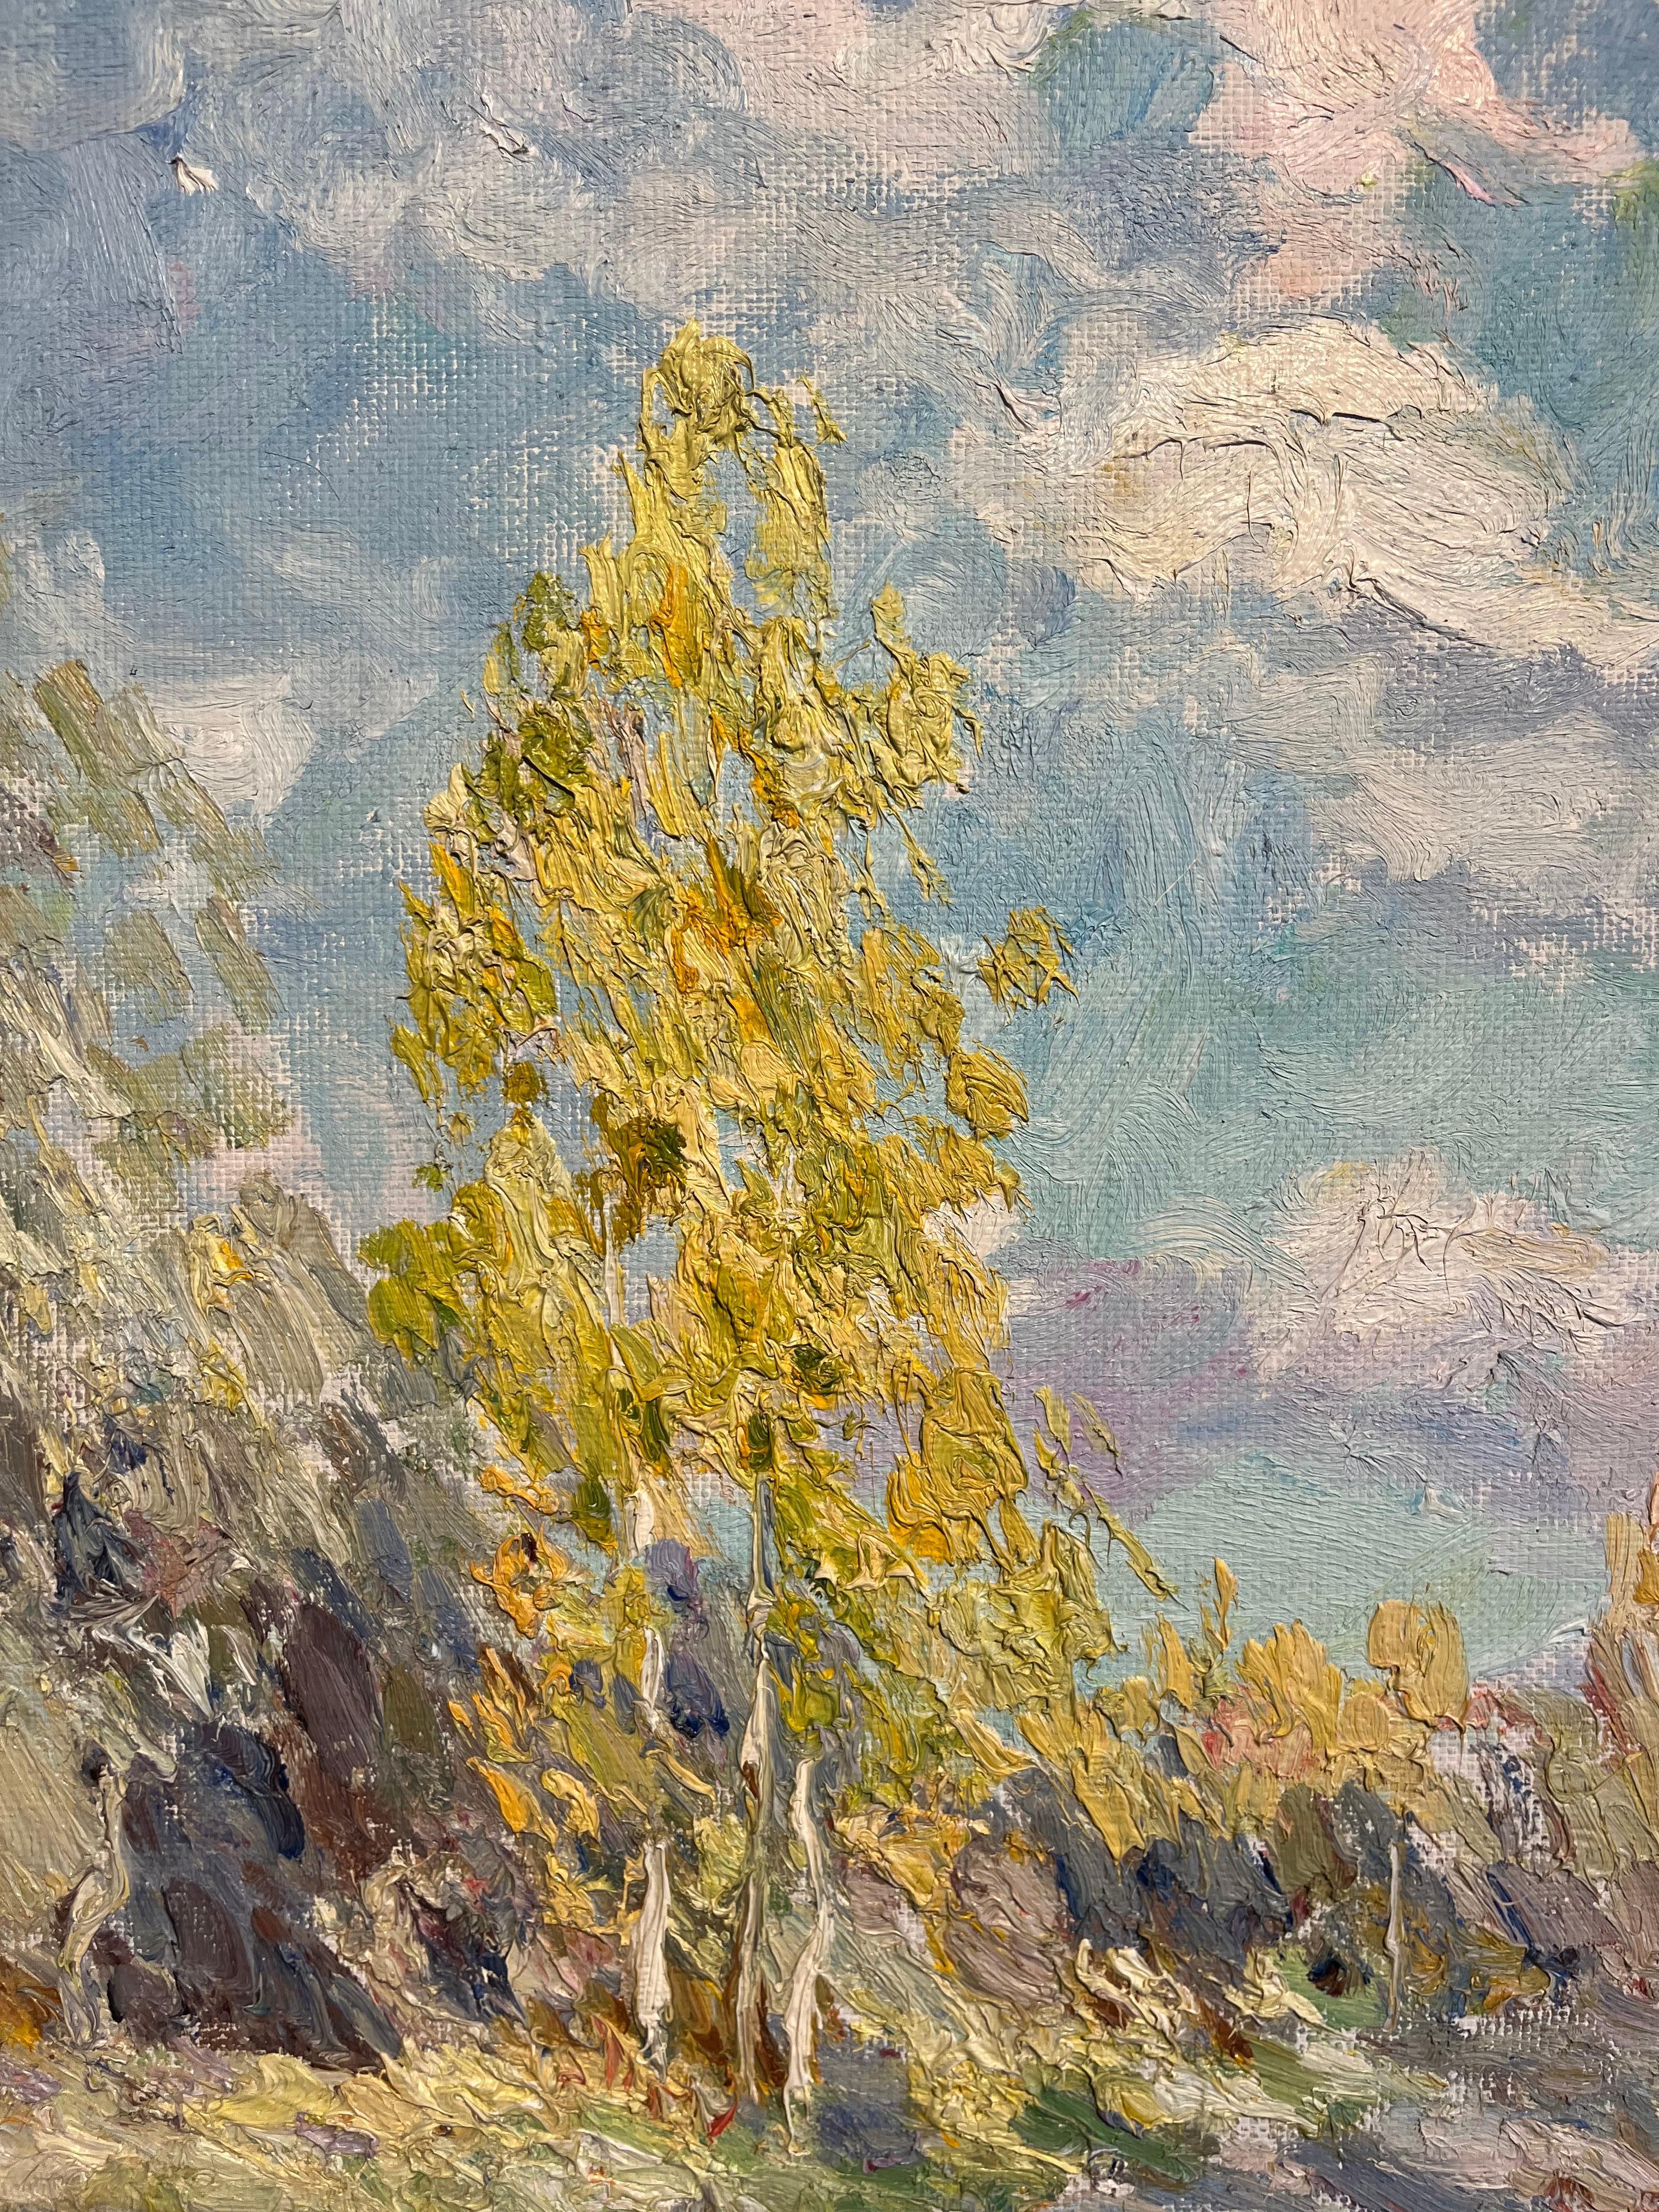 Die Malerei von Georgij Moroz, die sehr materiell und luminosa ist, wird in dieser autonomen Region sehr geschätzt.
I toni sono Gialli e arancioni delle foglie d'autunno, Il cielo azzurro e luminoso con nuvole del nord. 
  